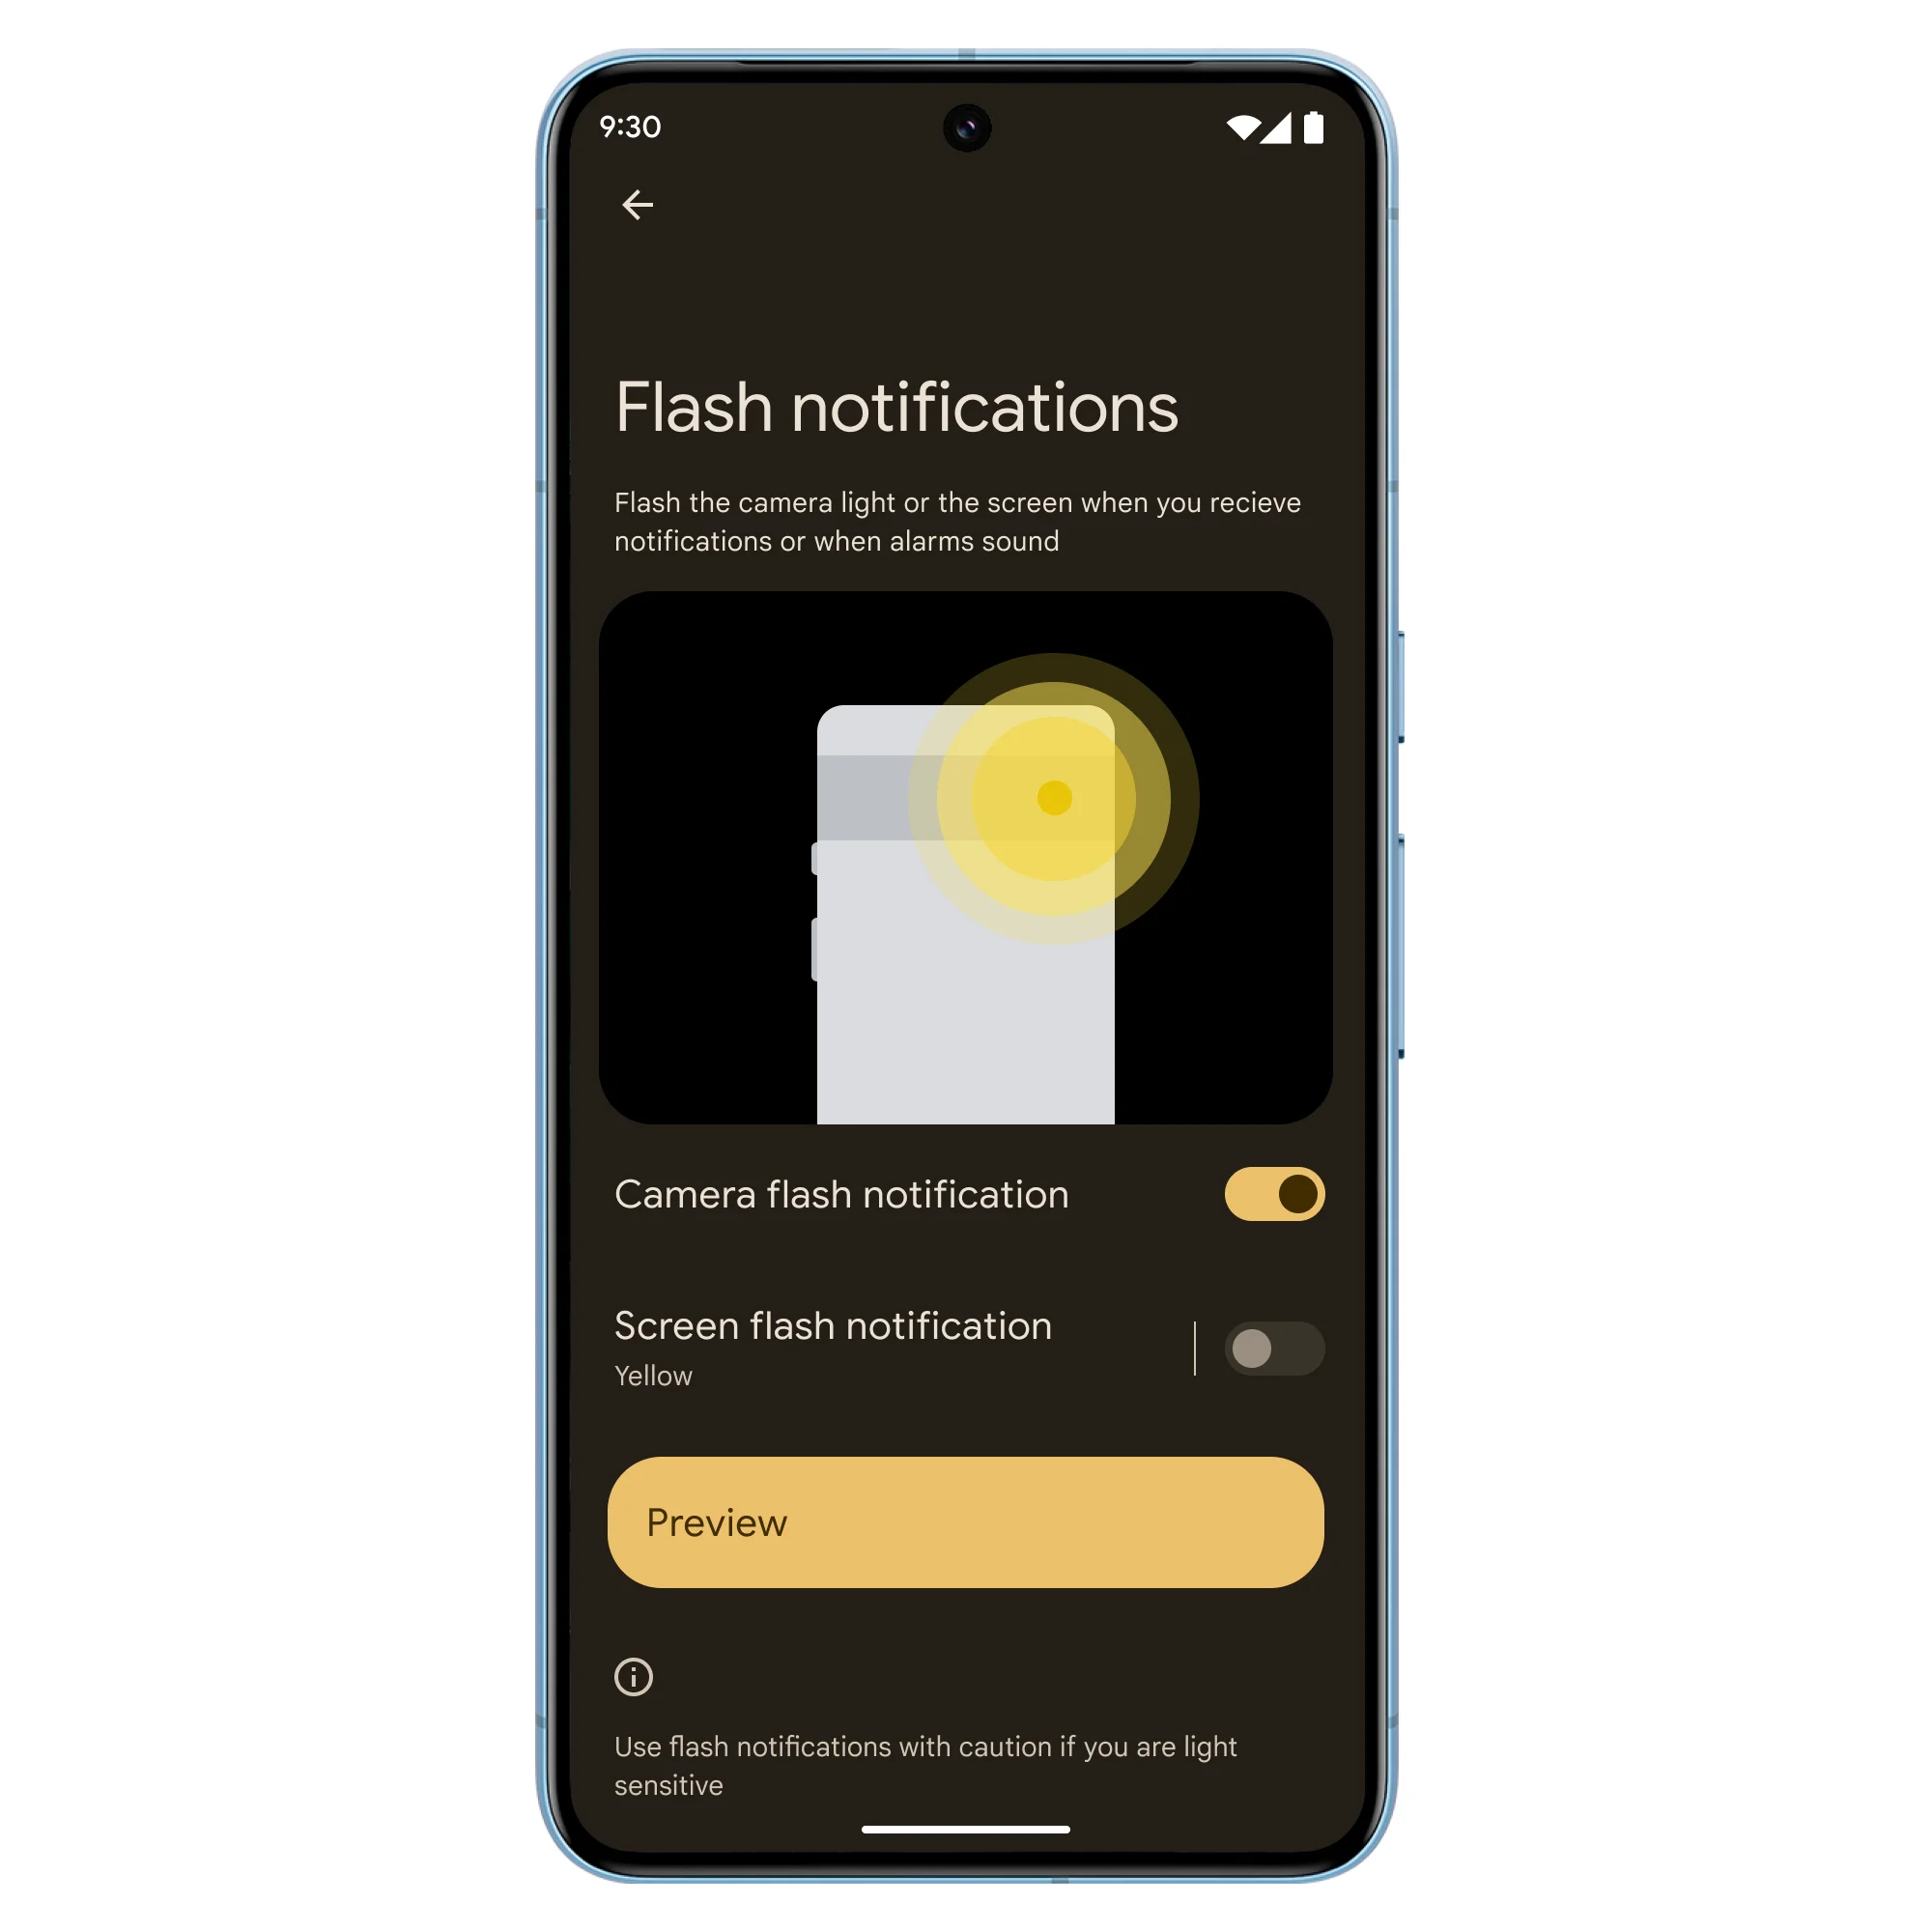 Foto das “Flash notifications”, que permitem alternar entre ligado e desligado nas configurações.